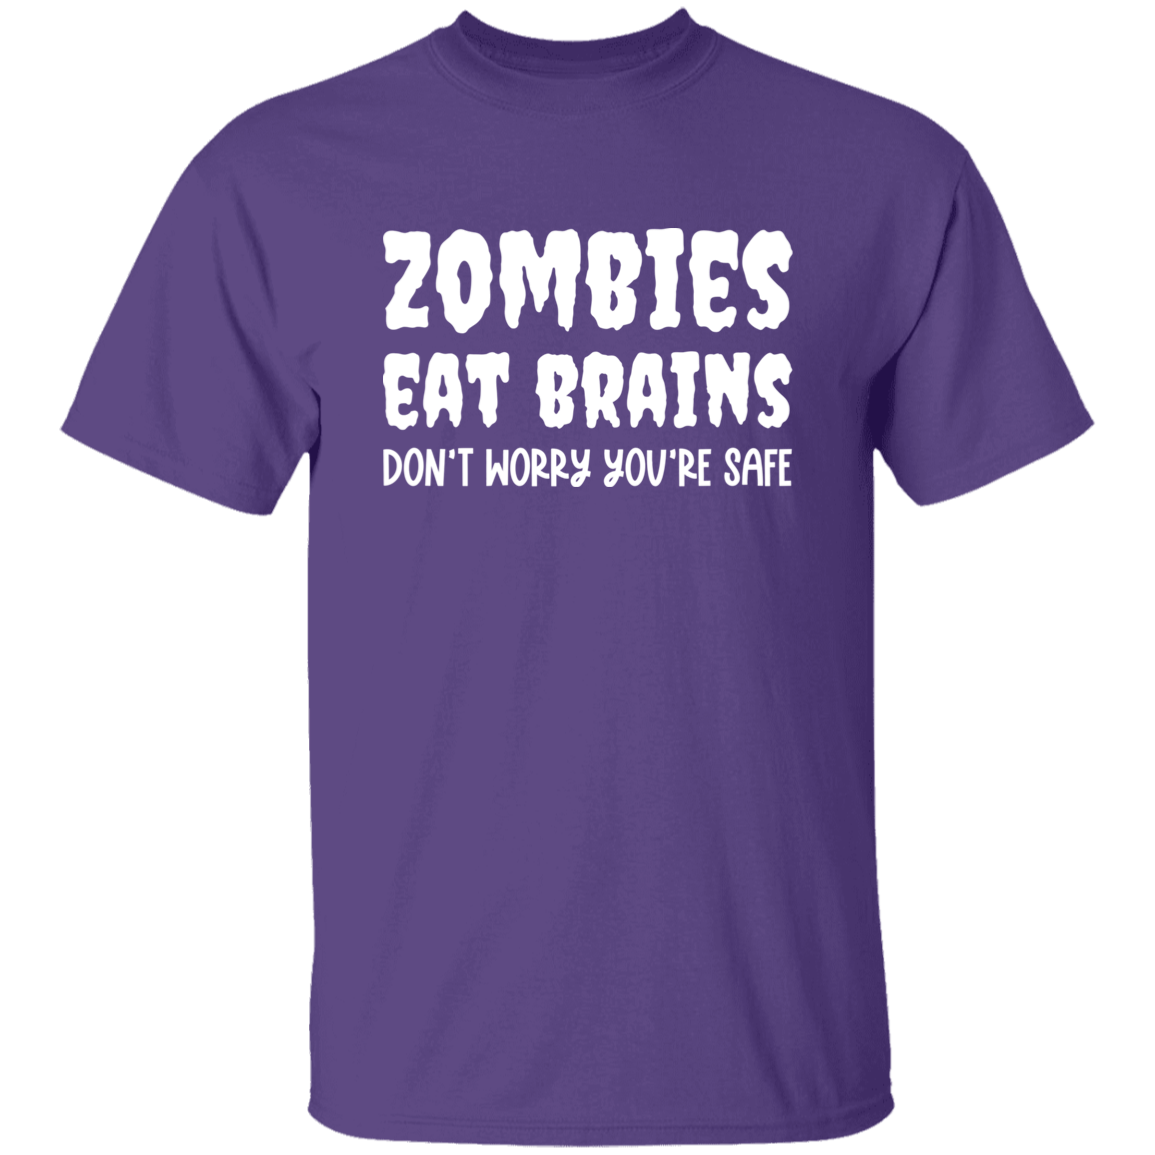 Zombies Eat Brains Unisex T-Shirt